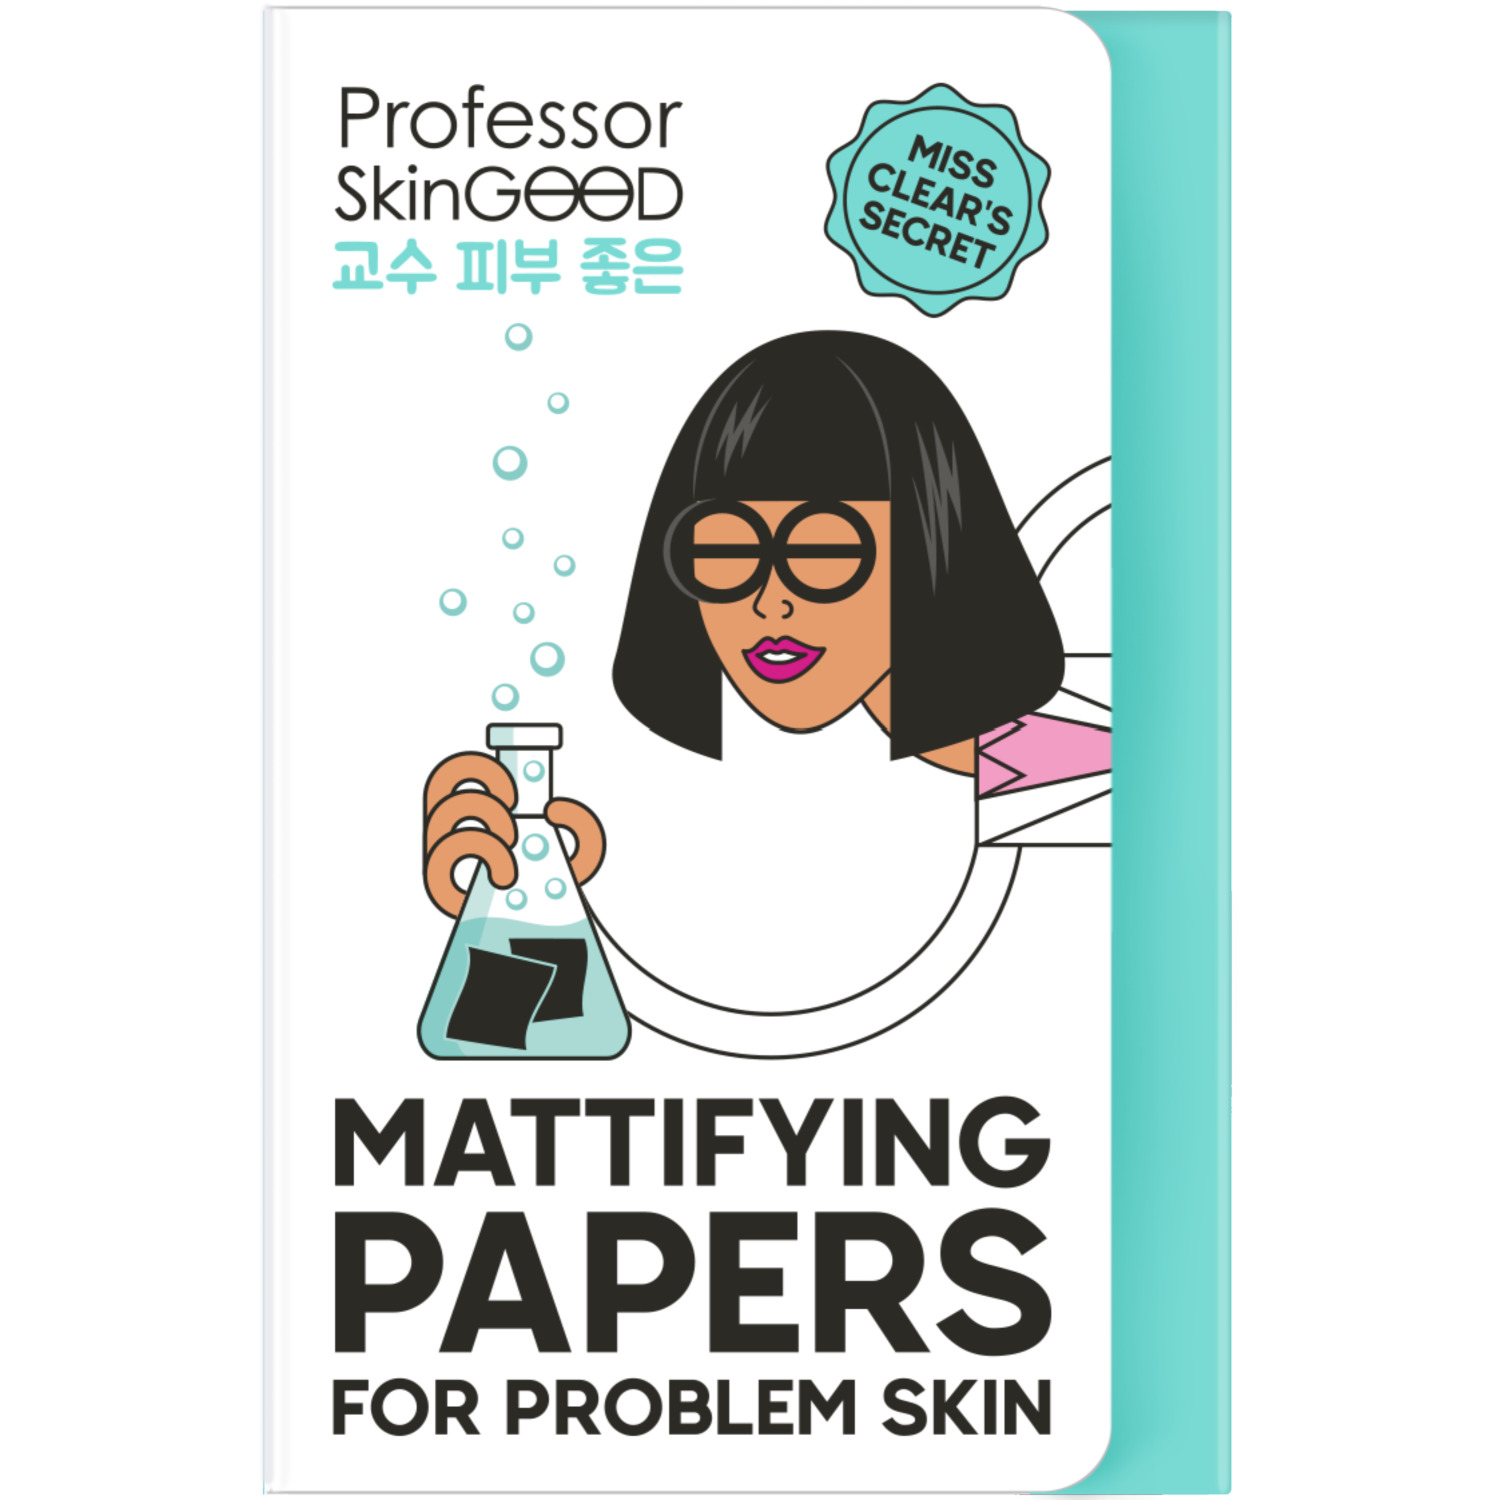 Салфетки Professor SkinGood Mattifying Papers матирующие для проблемной кожи 50 шт салфетки для лица матирующие cettua 50 шт